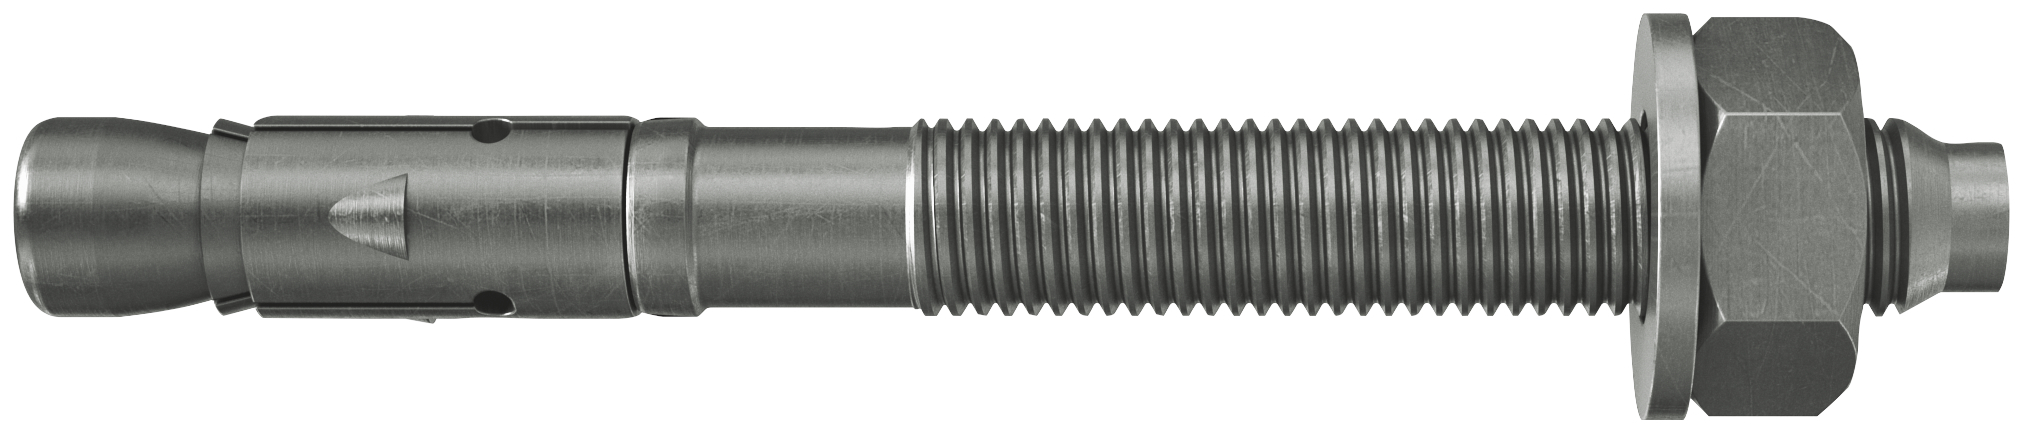 fischer Tassello acciaio FAZ II 10/160 A4 (20 Pz.) L'ancorante ad espansione ad alte prestazioni per carichi statici su calcestruzzo fessurato e per applicazioni sismiche. Versione in acciaio inossidabile con classe di resistenza alla corrosione CRC III..